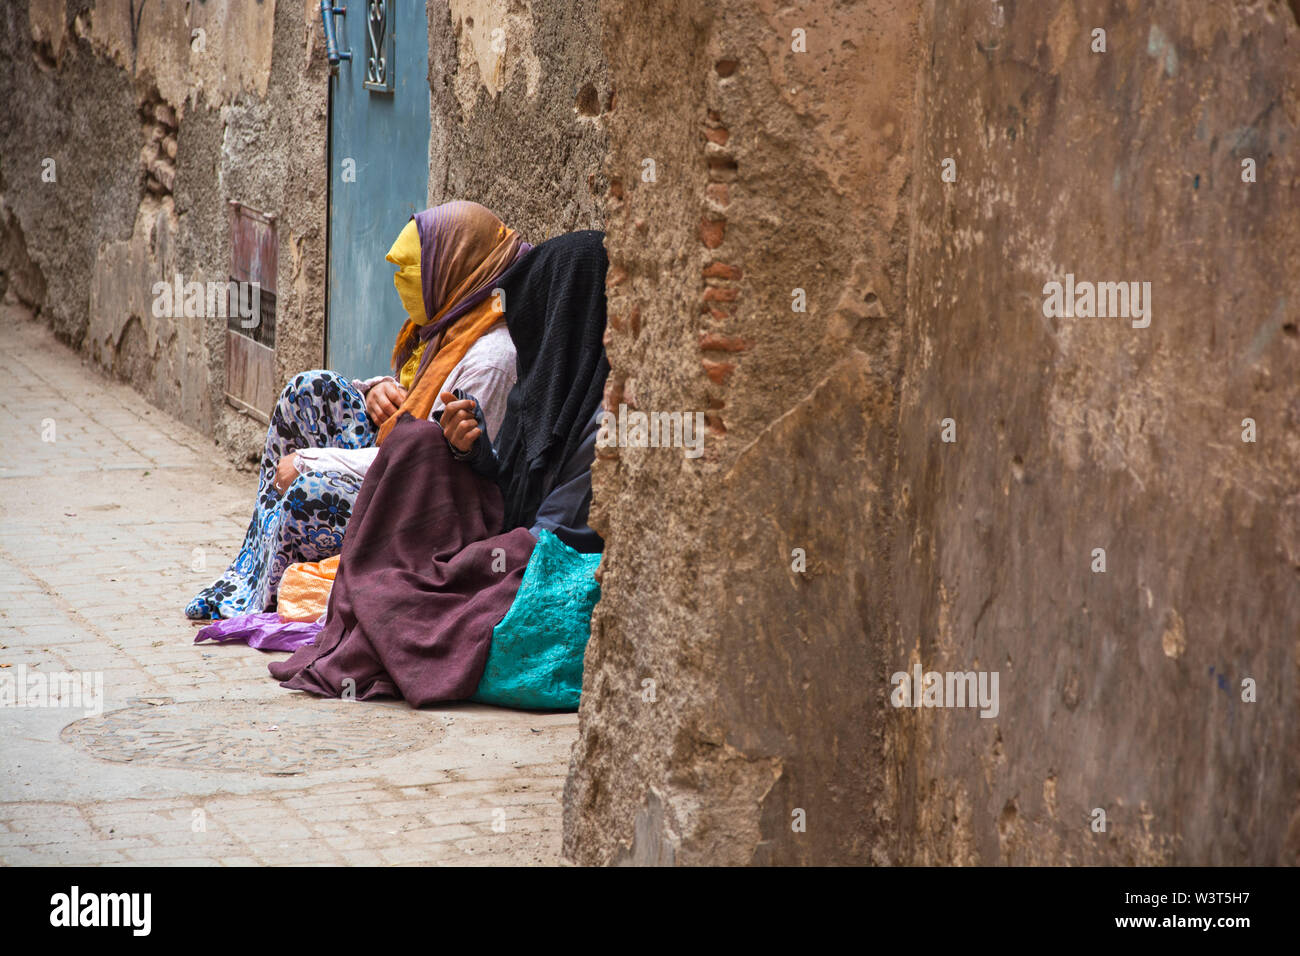 Lokale marokkanische Volk in den Straßen, Gassen von Marrakesch über tägliche arabische Leben in den Verwitterten kulturellen Medina Stockfoto